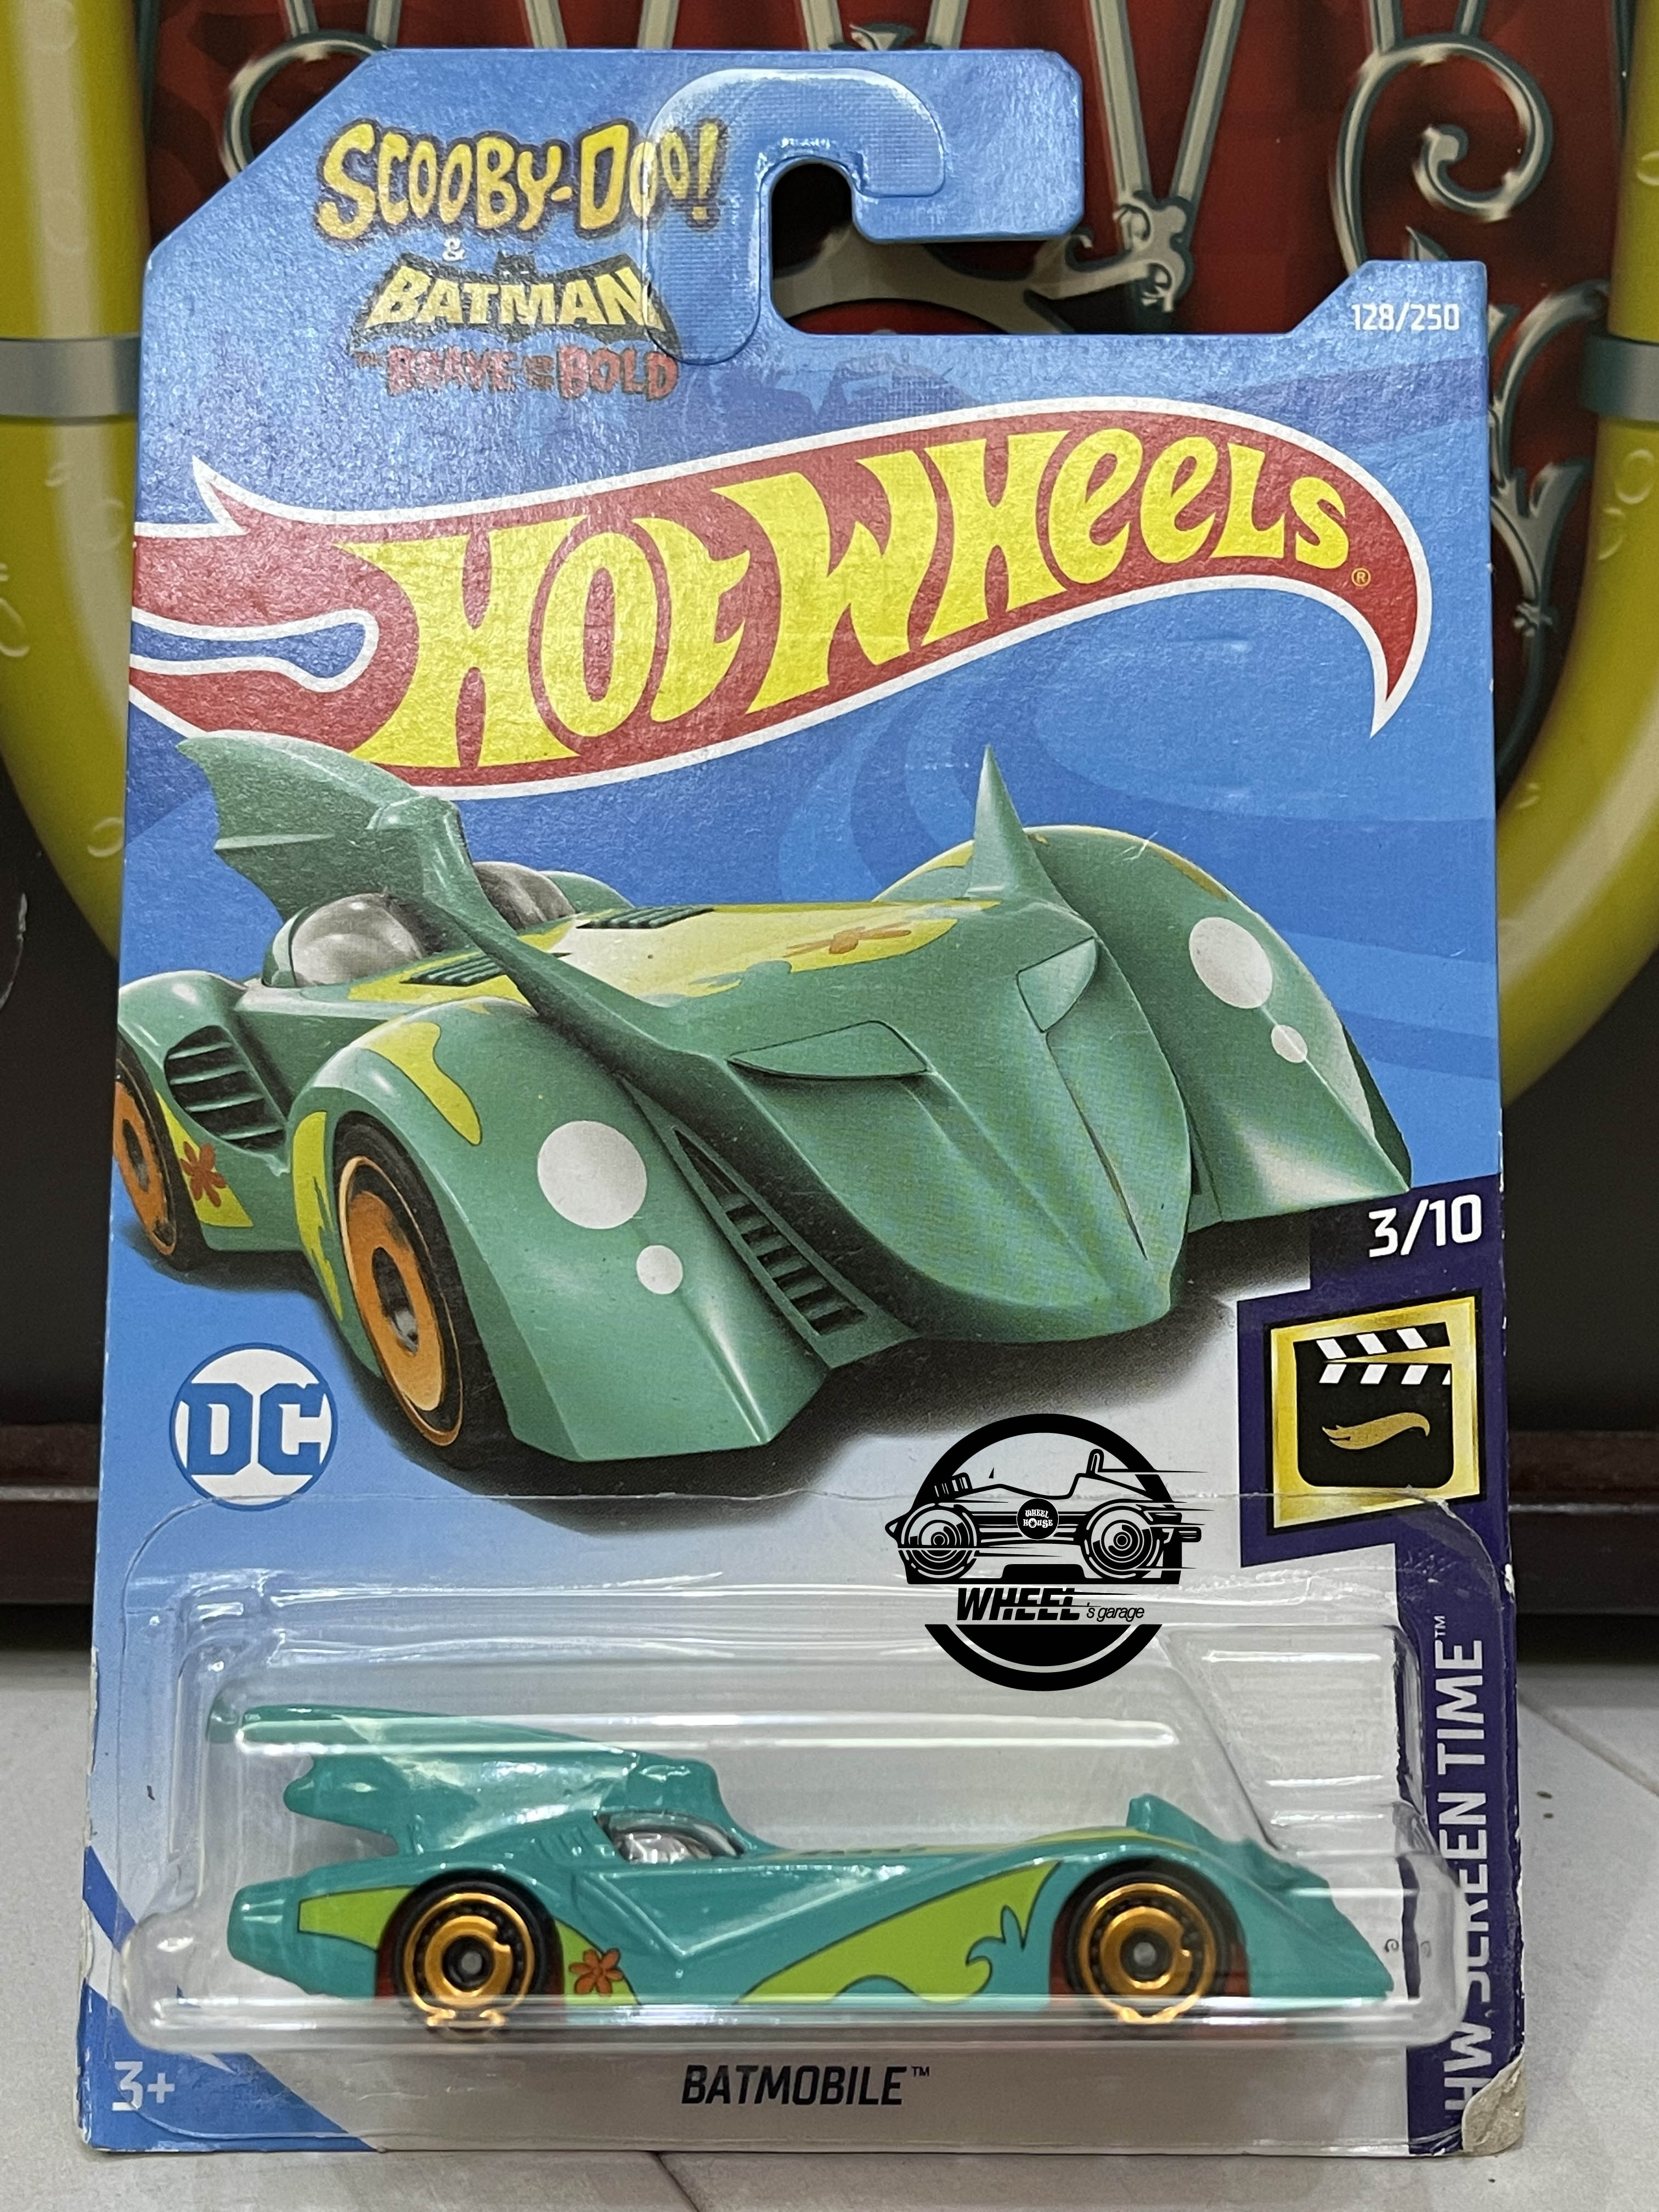 Xe mô hình đồ chơi Hotwheels cơ bản 1:64 - Batmobile (xanh ngọc) 